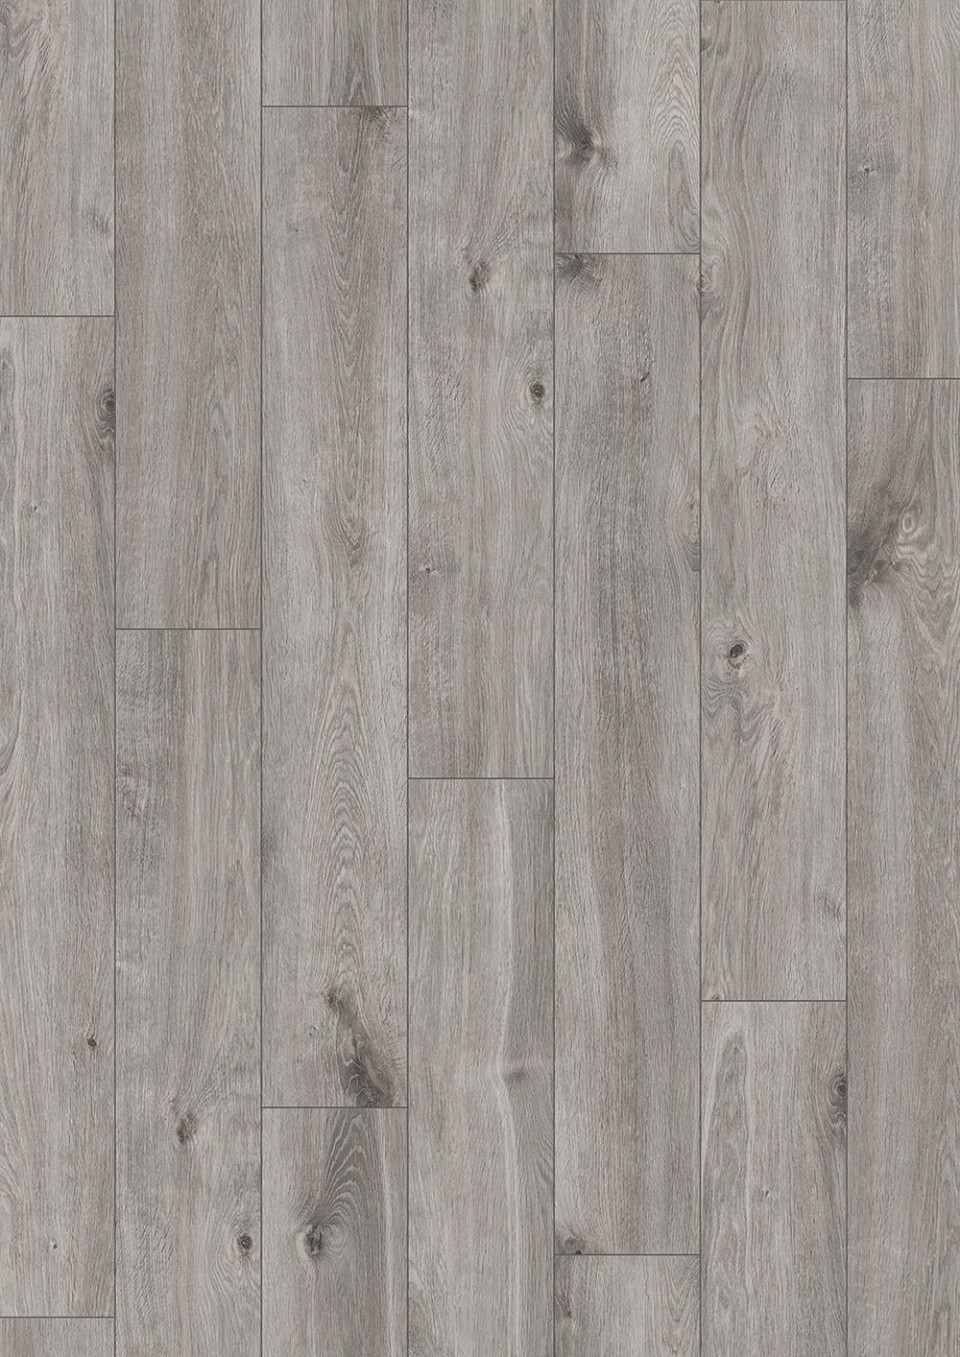 Alpod Floor Expert BINPRO-1531/0 Laminlt padl, CLASSIC AQUA, 1531 oak aramis, 8 mm, 1 svos